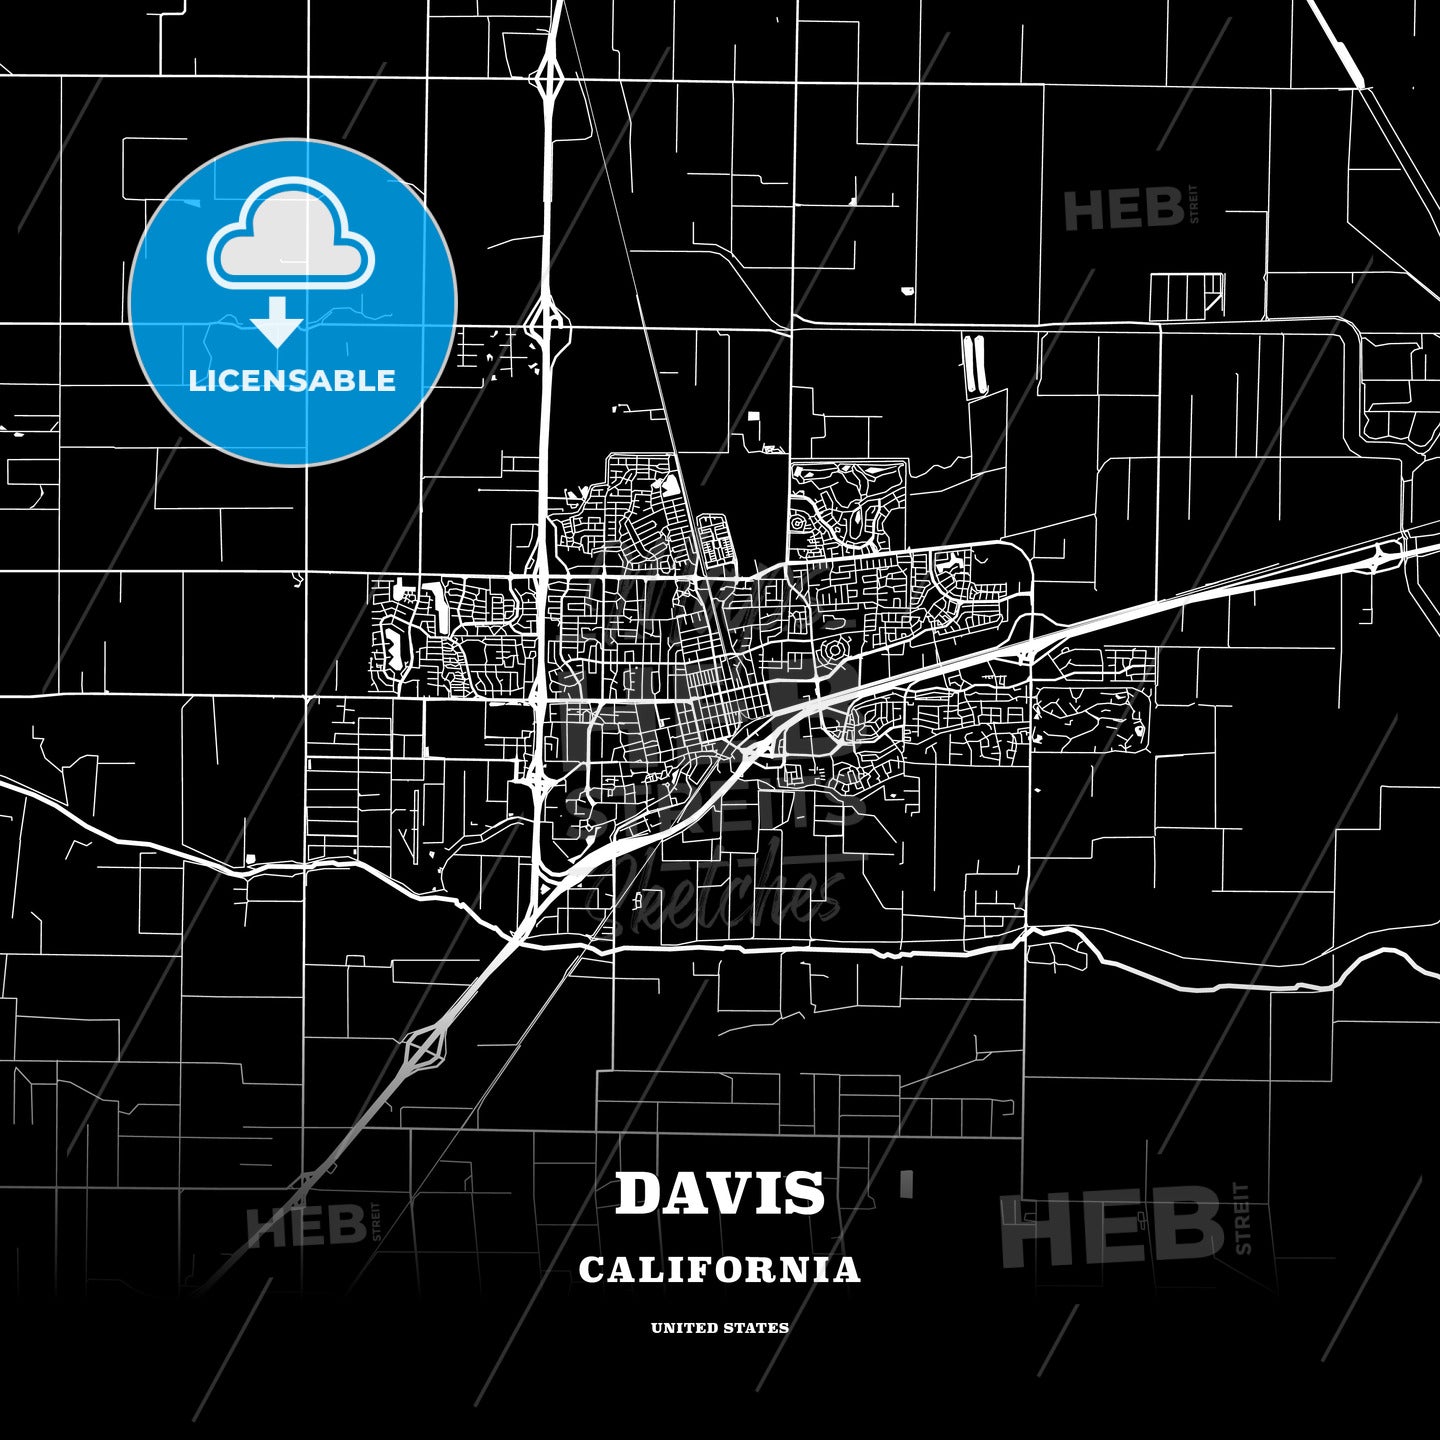 Davis, California, USA map